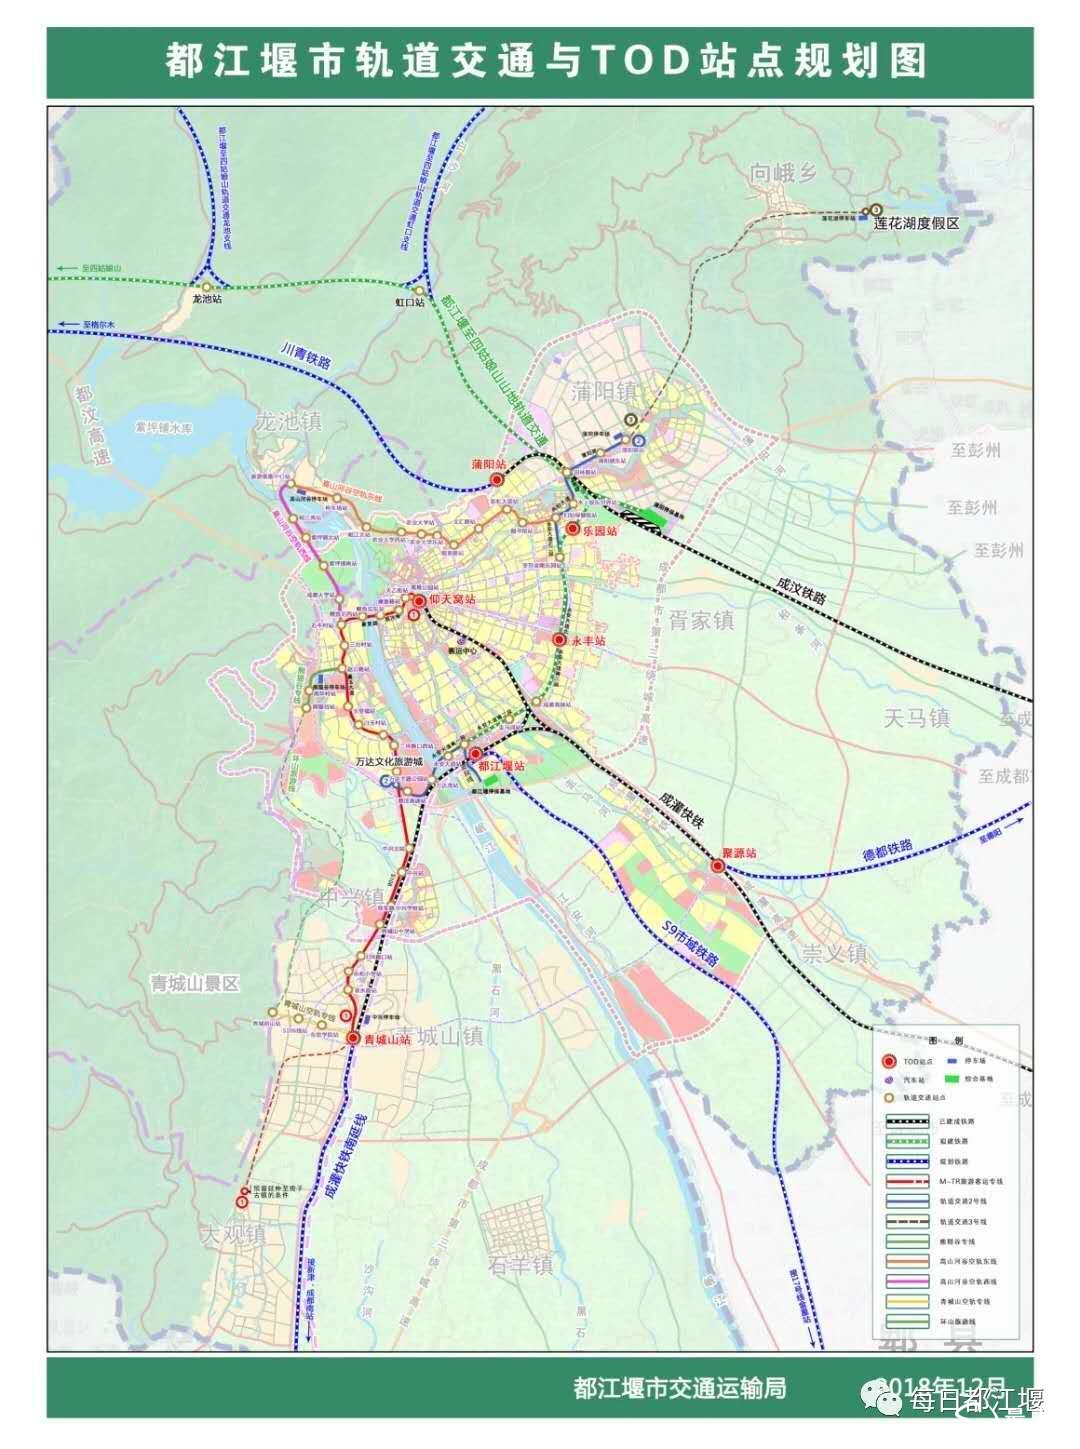 蒲陽站在都江堰市軌道交通規劃圖中的位置